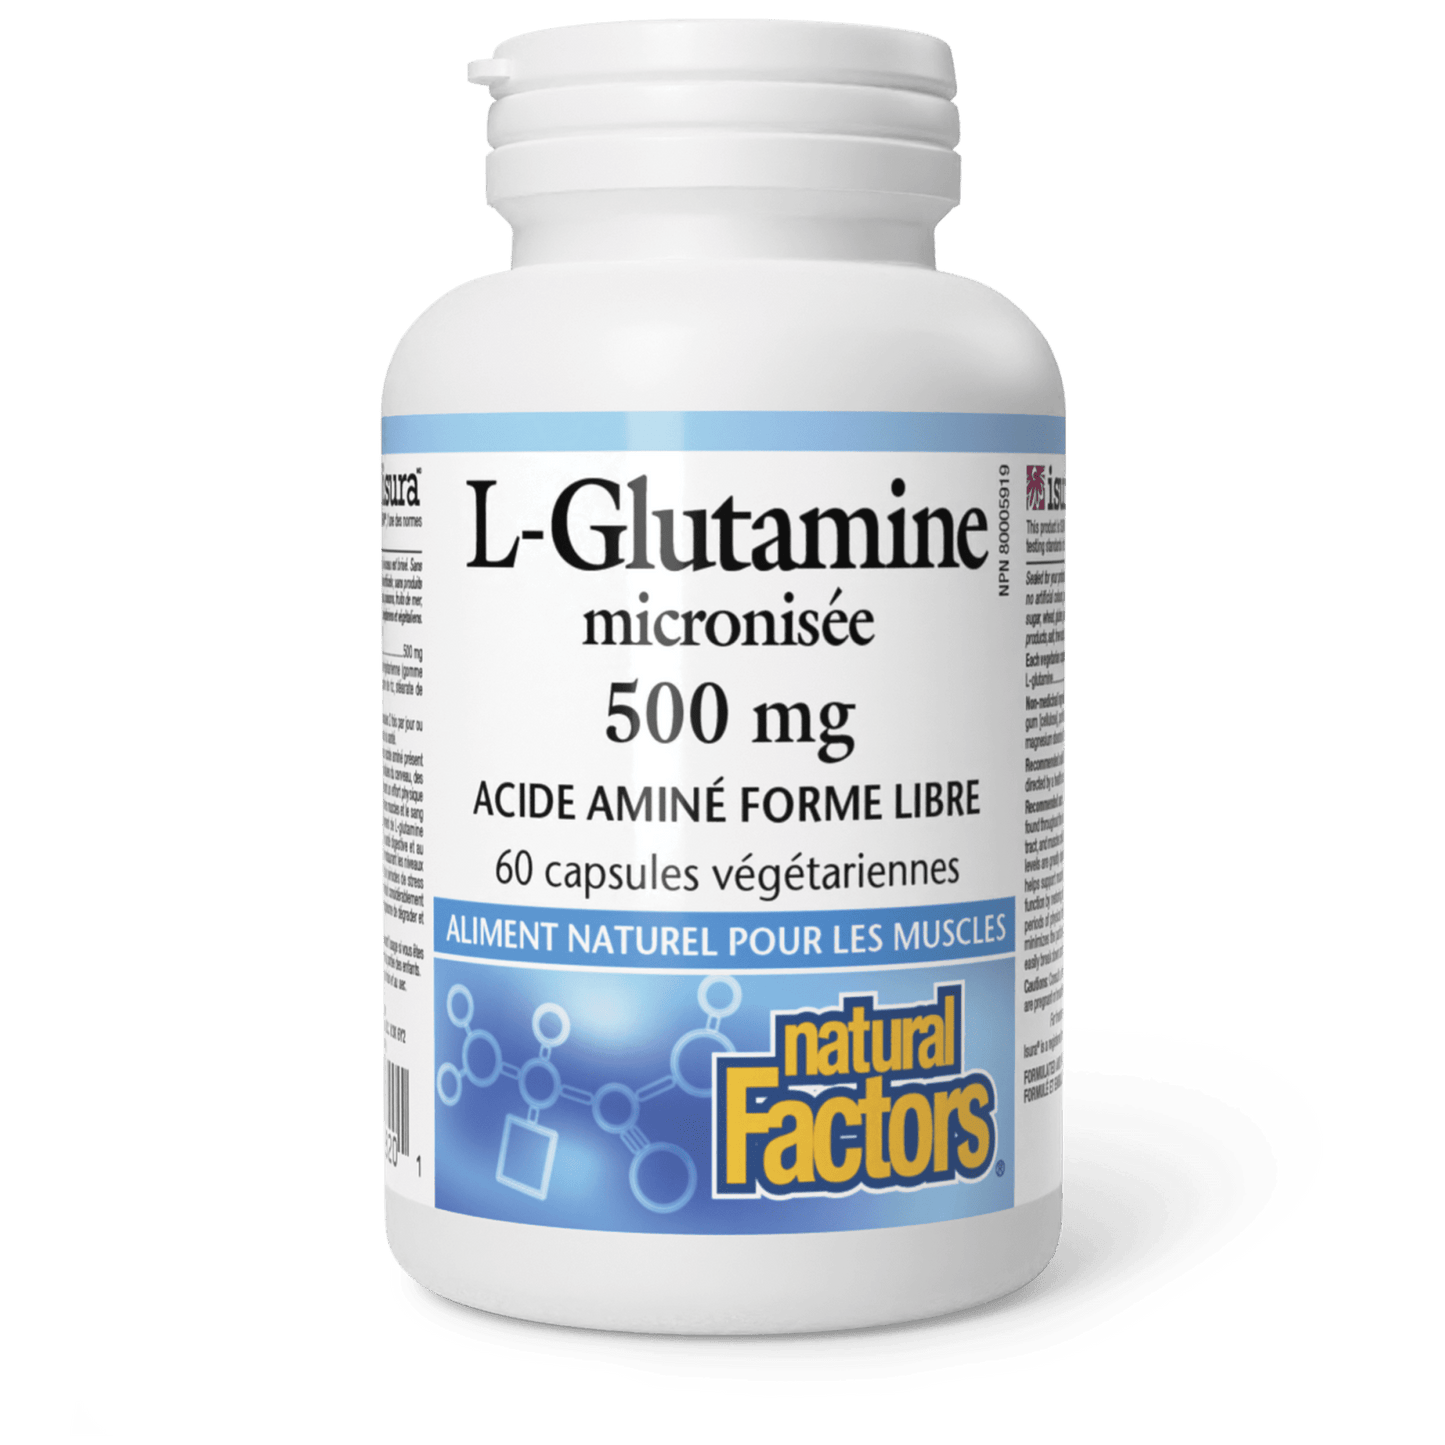 L-Glutamine micronisée 500 mg, Natural Factors|v|image|2820